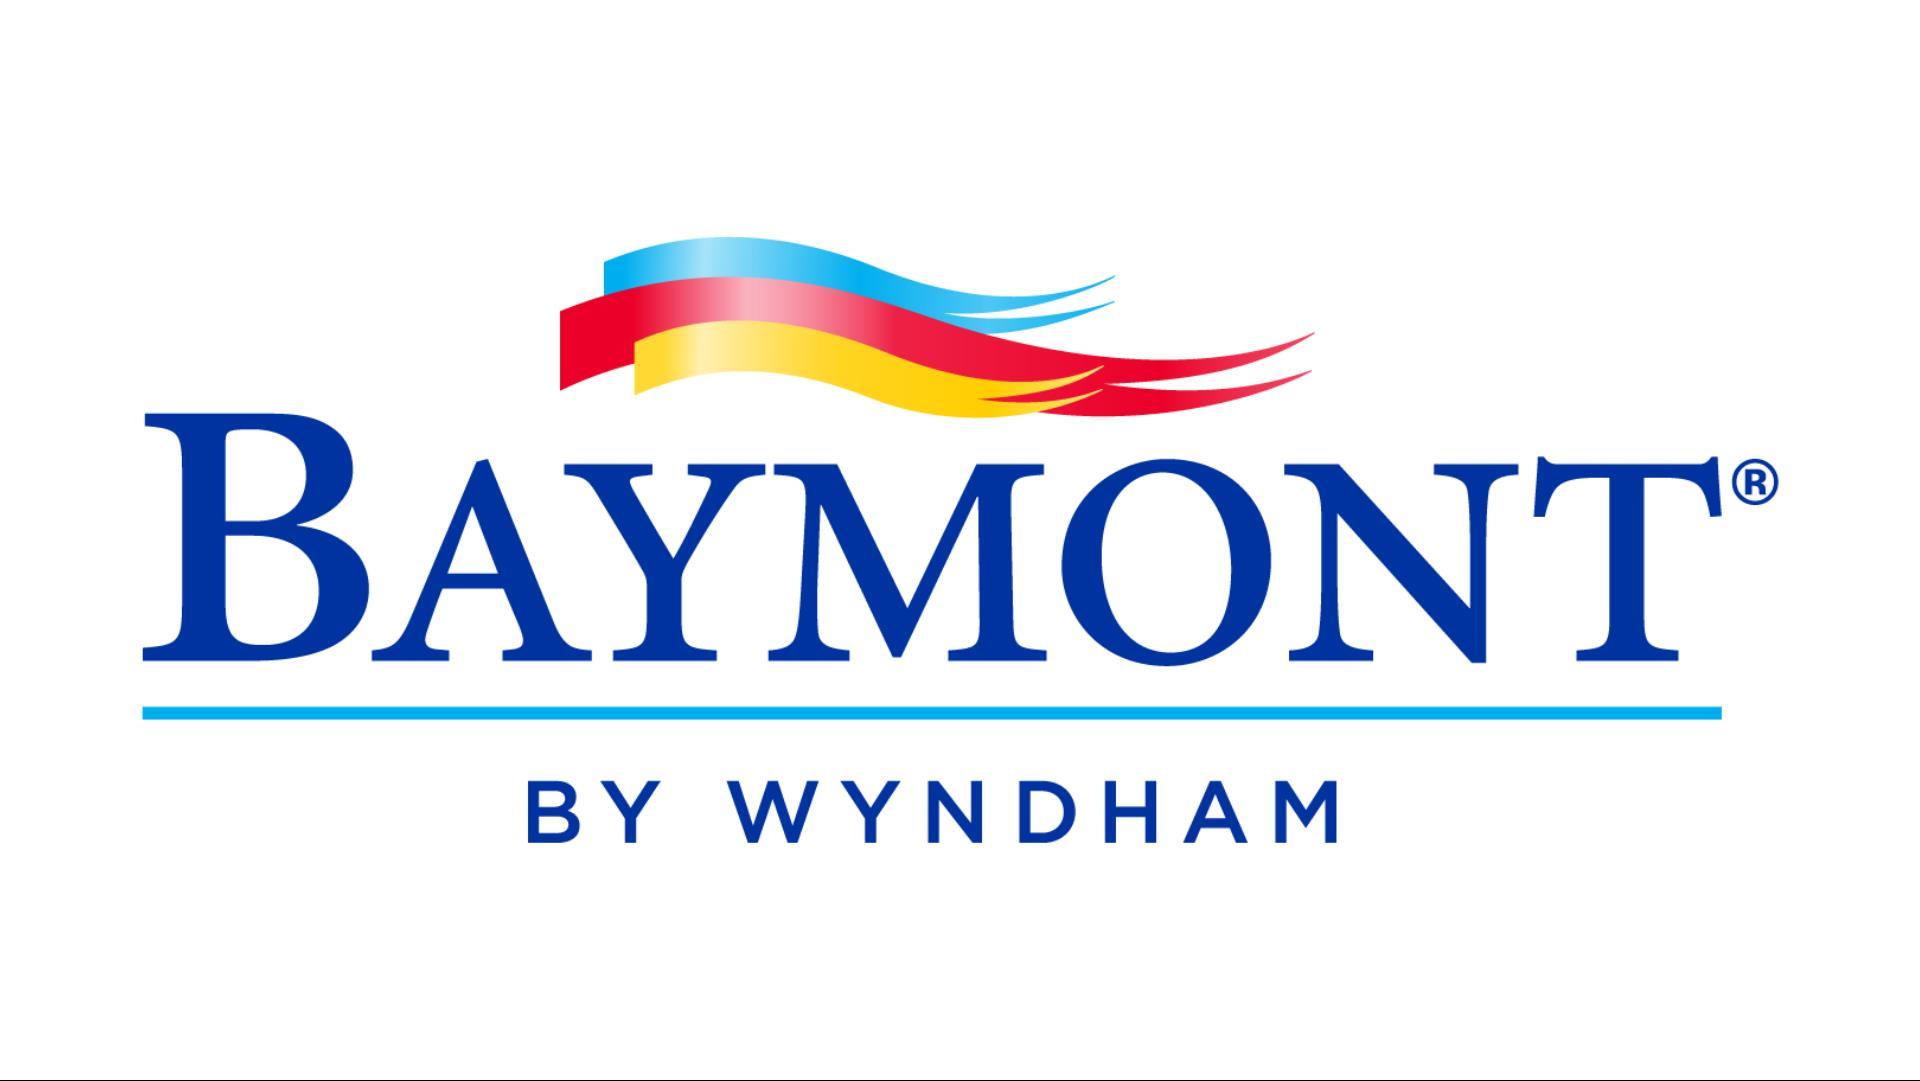 Tysons Corner Suites, a Baymont by Wyndham in Fairfax, VA